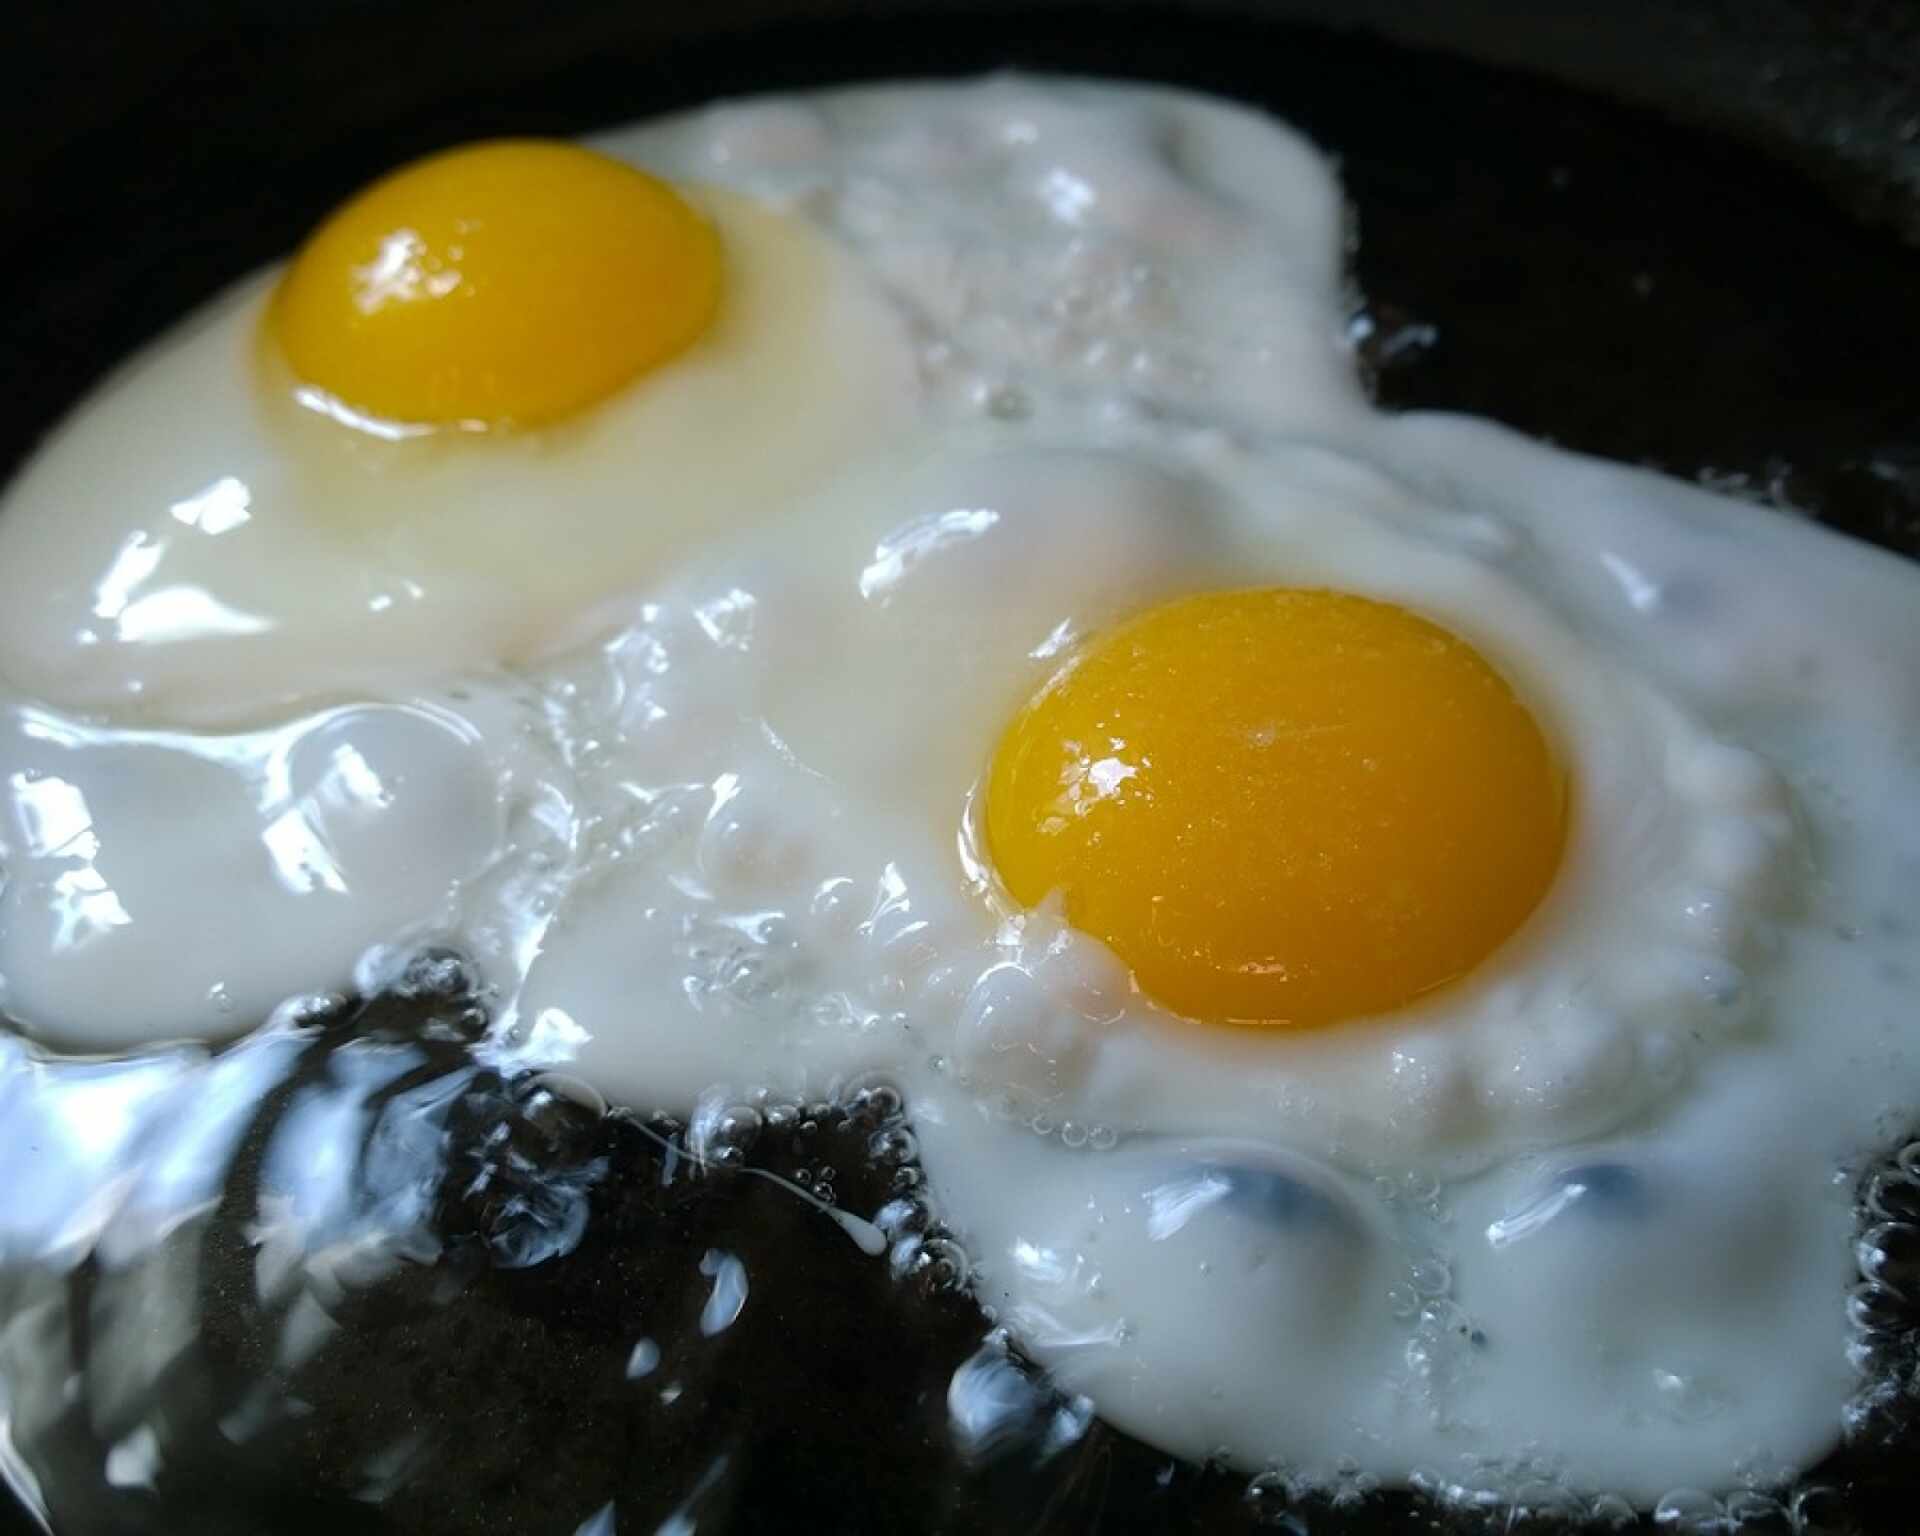 Bielkoviny - upečené vajíčka na panvici